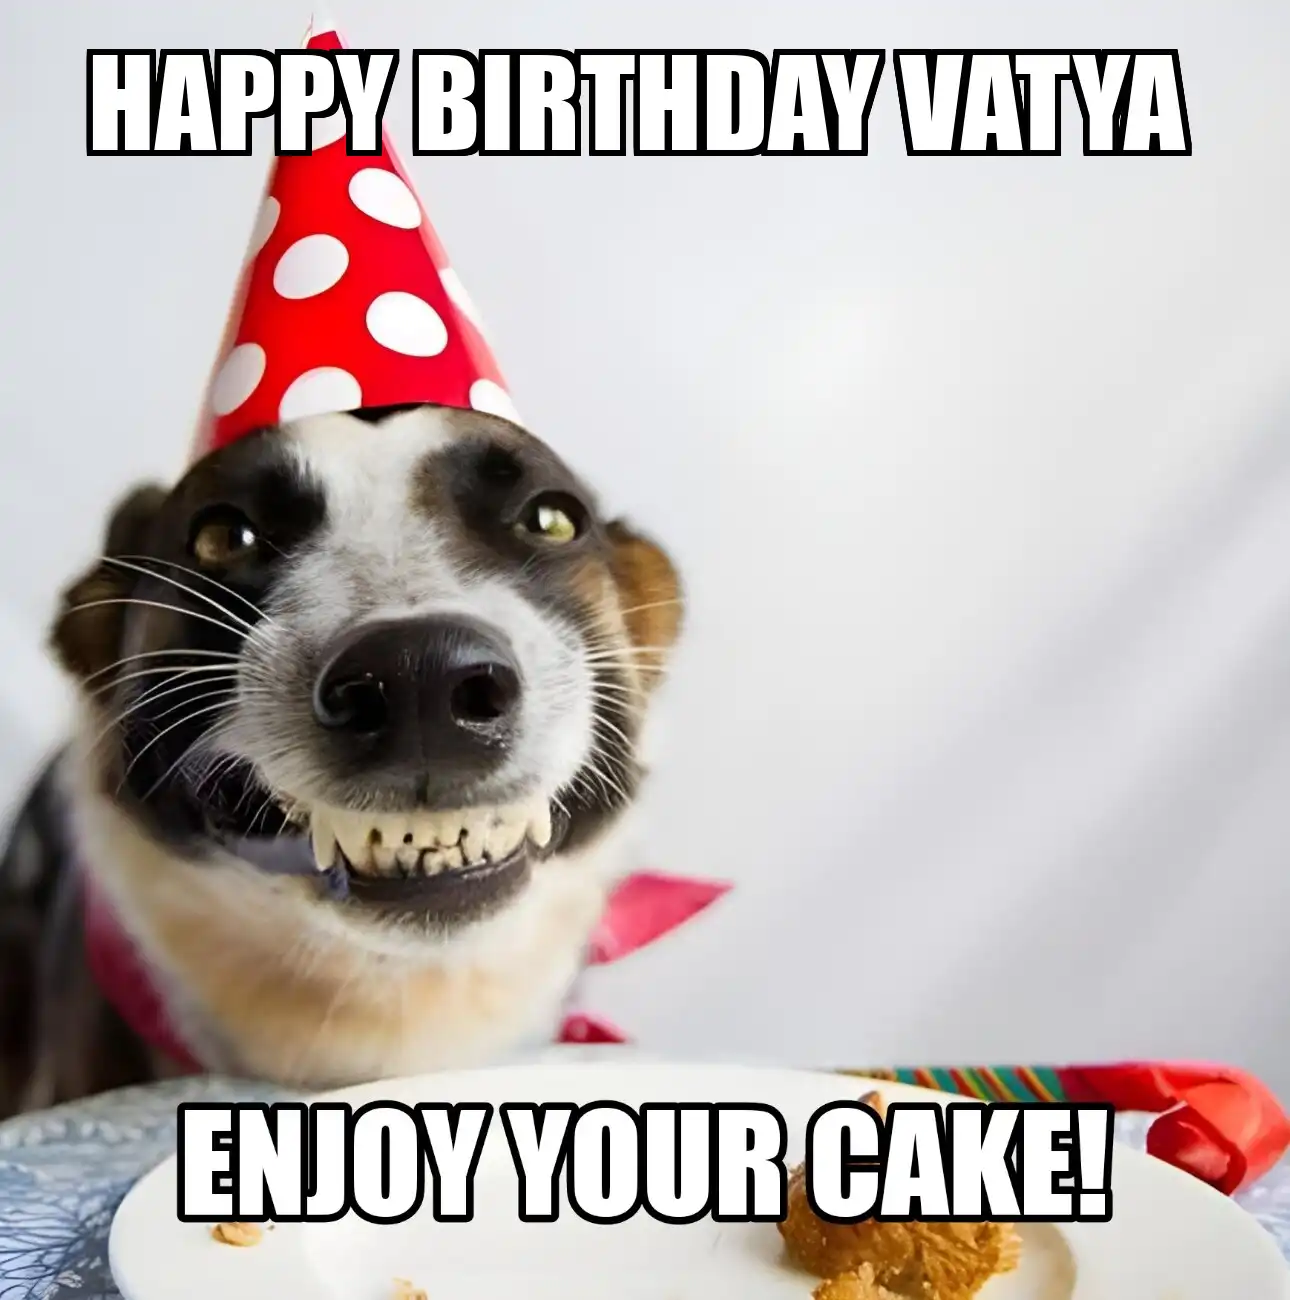 Happy Birthday Vatya Enjoy Your Cake Dog Meme